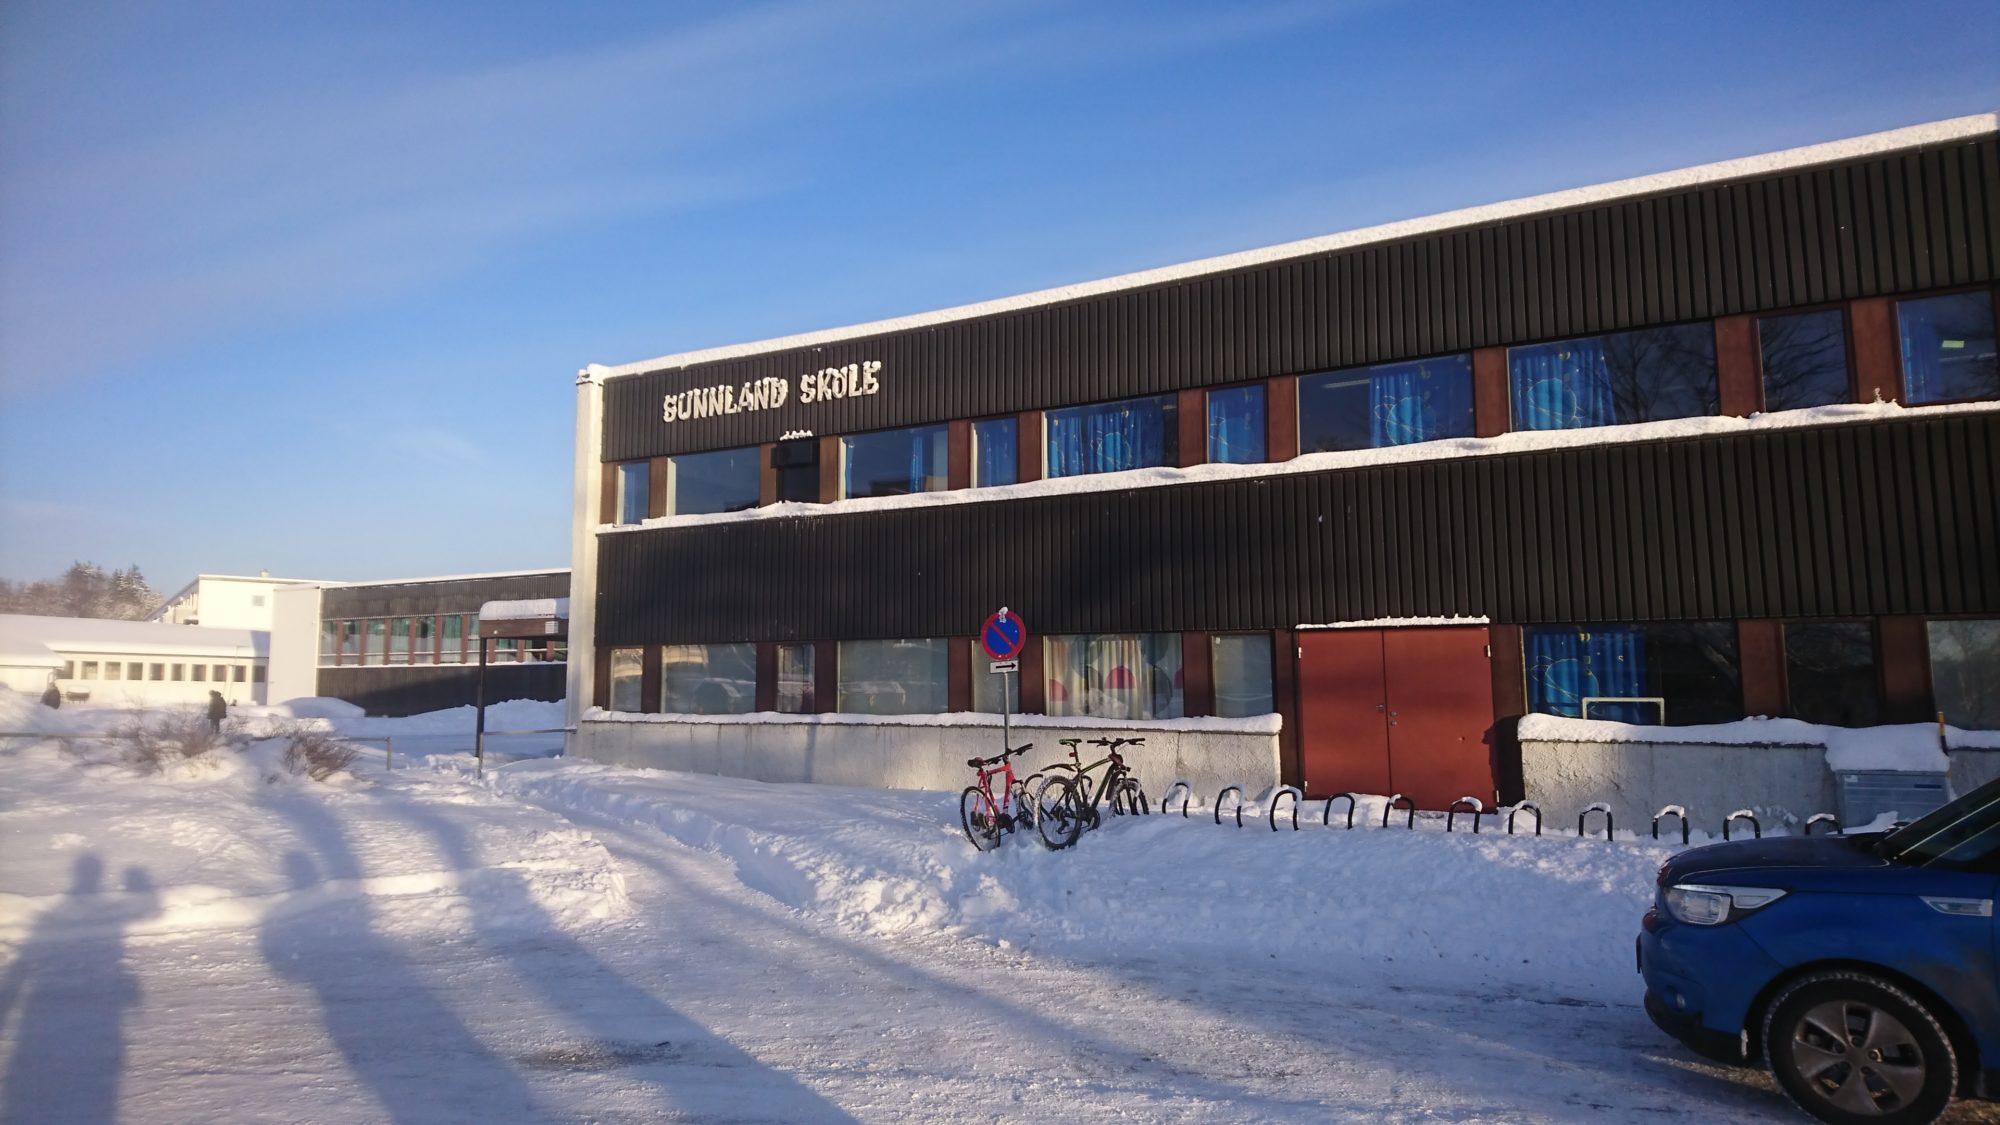 Sunnland skole i Trondheim er en av skolene som har vært med i prosjektet. Foto: SINTEF